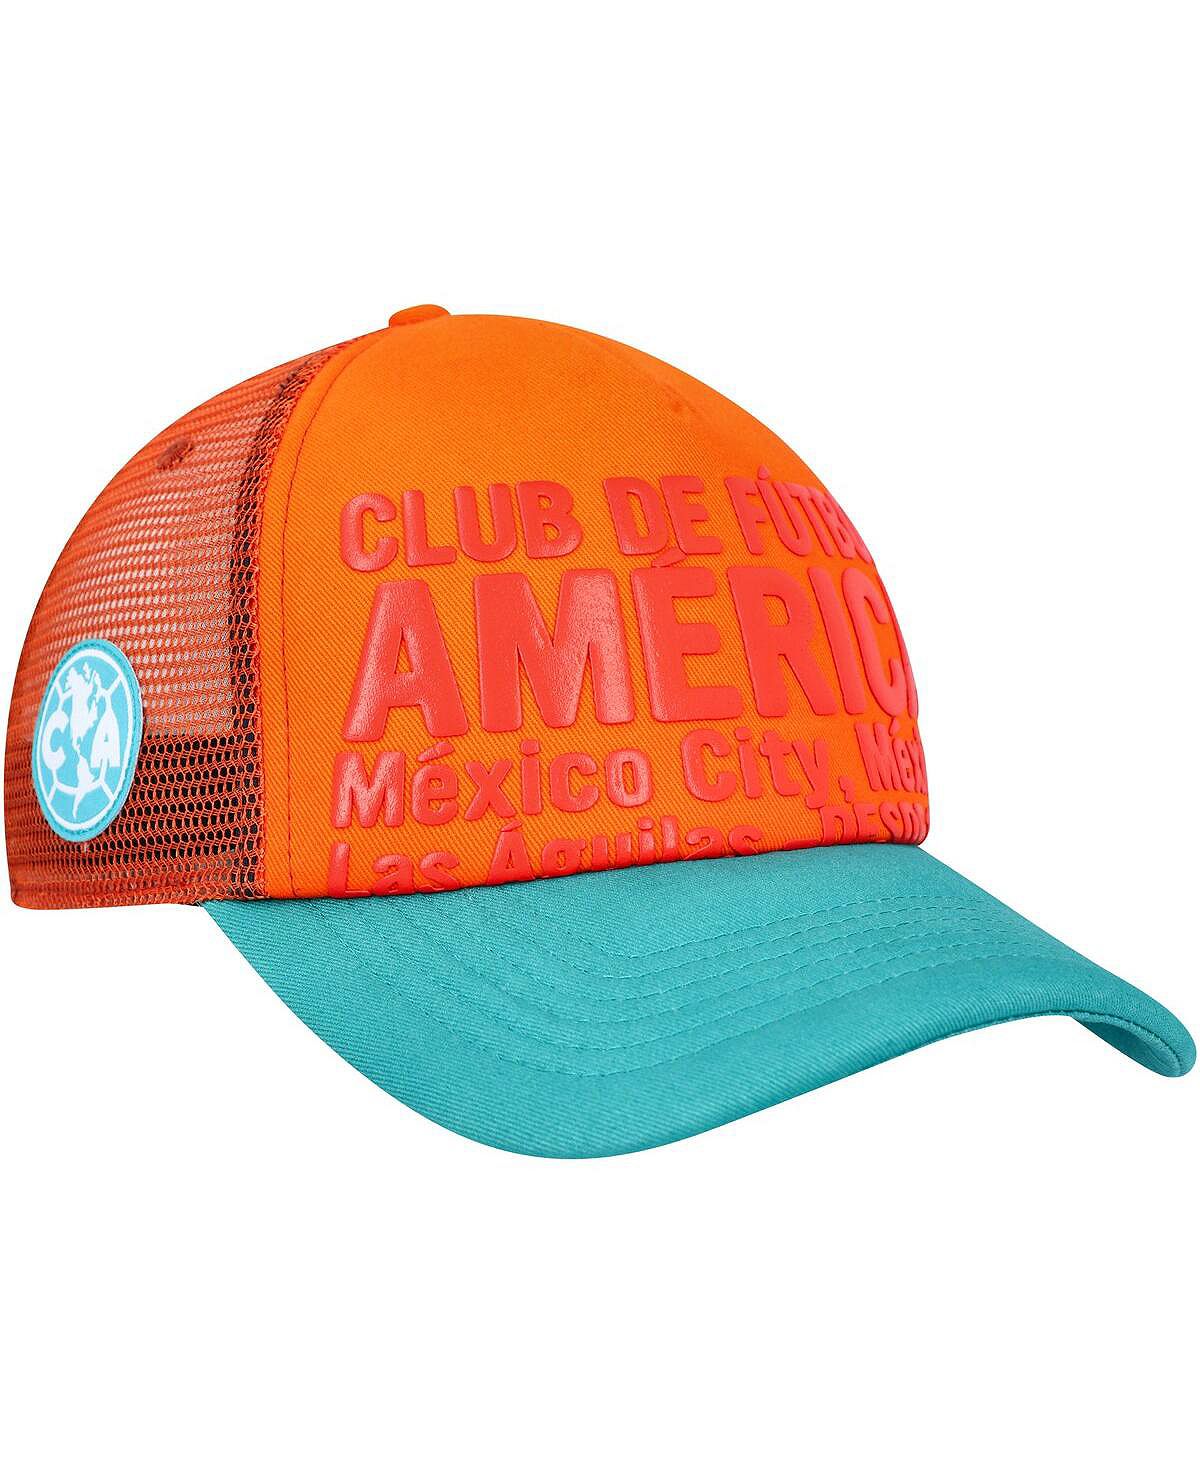 мужская синяя регулируемая шляпа cruz azul club gold fan ink Мужская регулируемая шляпа Orange Club America Club Gold Fan Ink